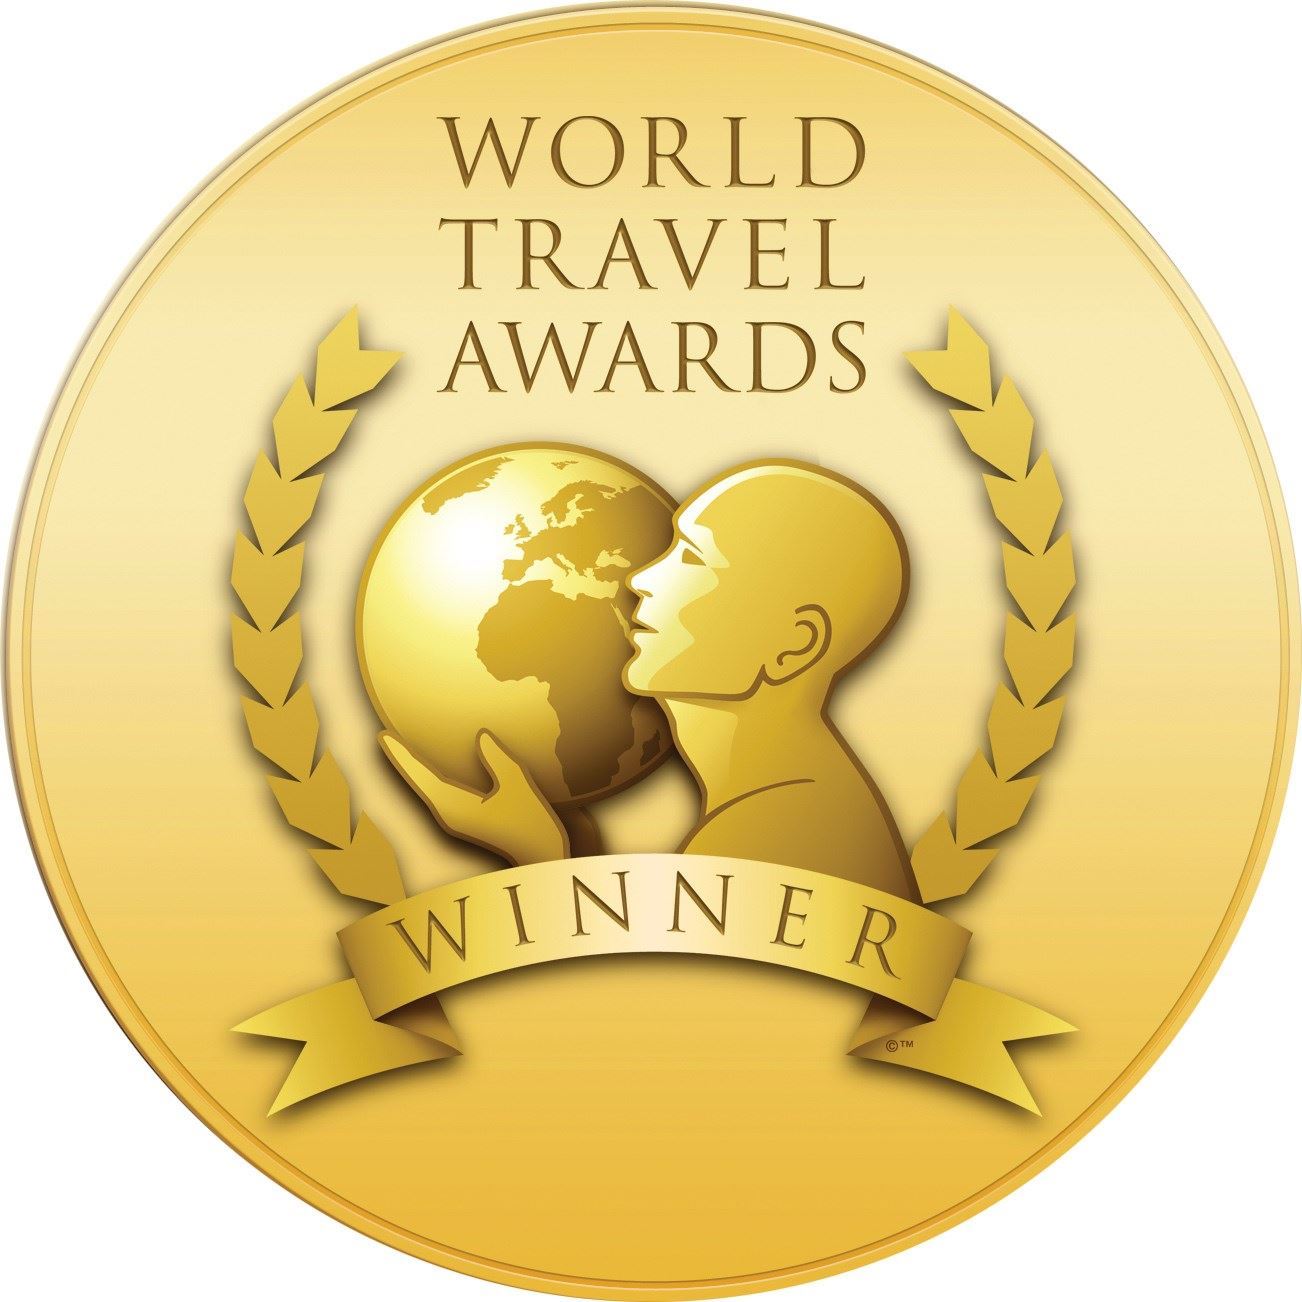 World Travel Awards 2016 celebrează excelenţa în turismul mondial